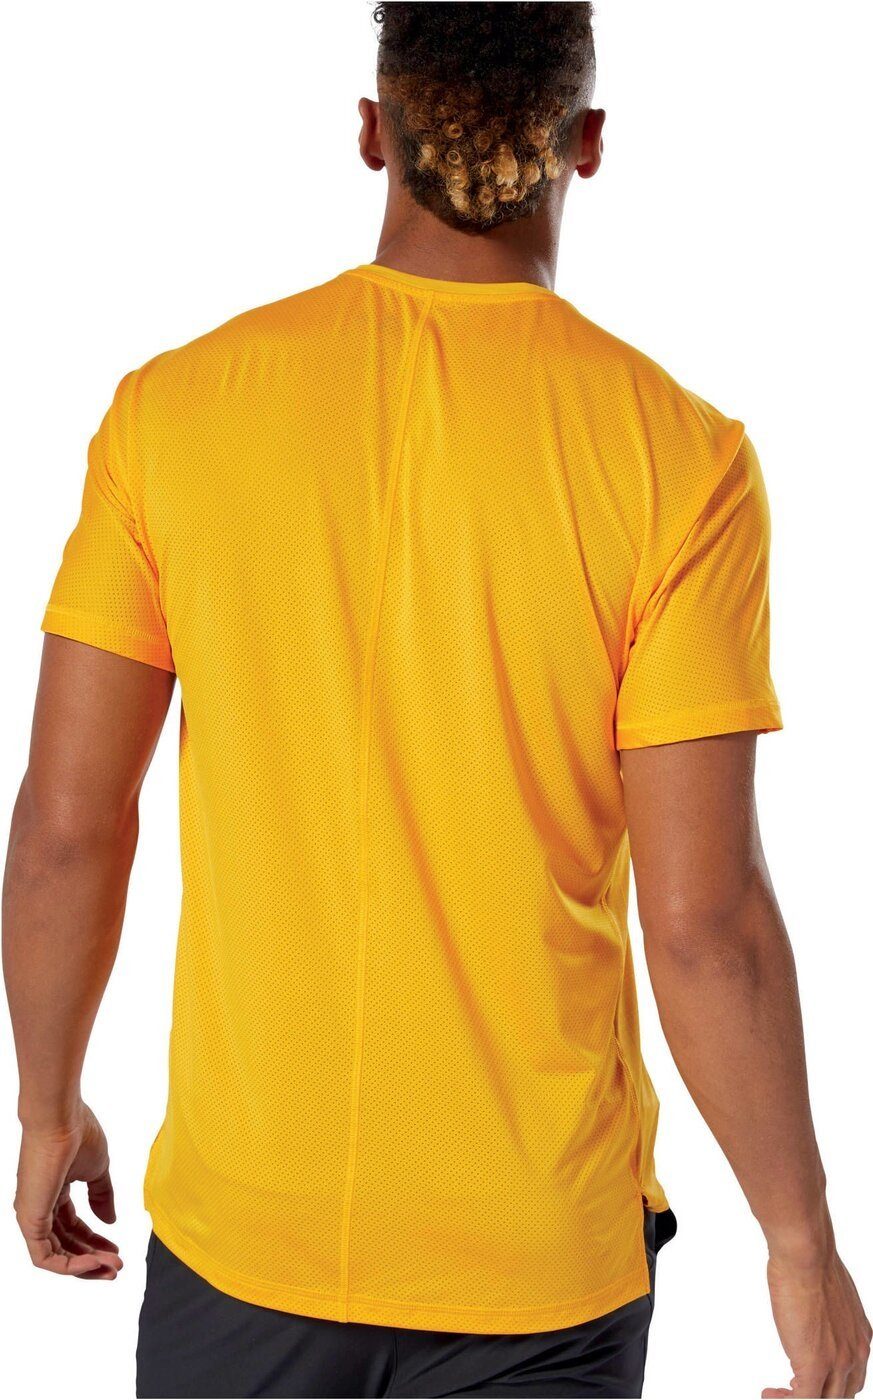 Sportshirt T-Shirt Freizeitshirt Laufshirt Herren ACTIVCHILL REEBOK T-Shirt Reebok